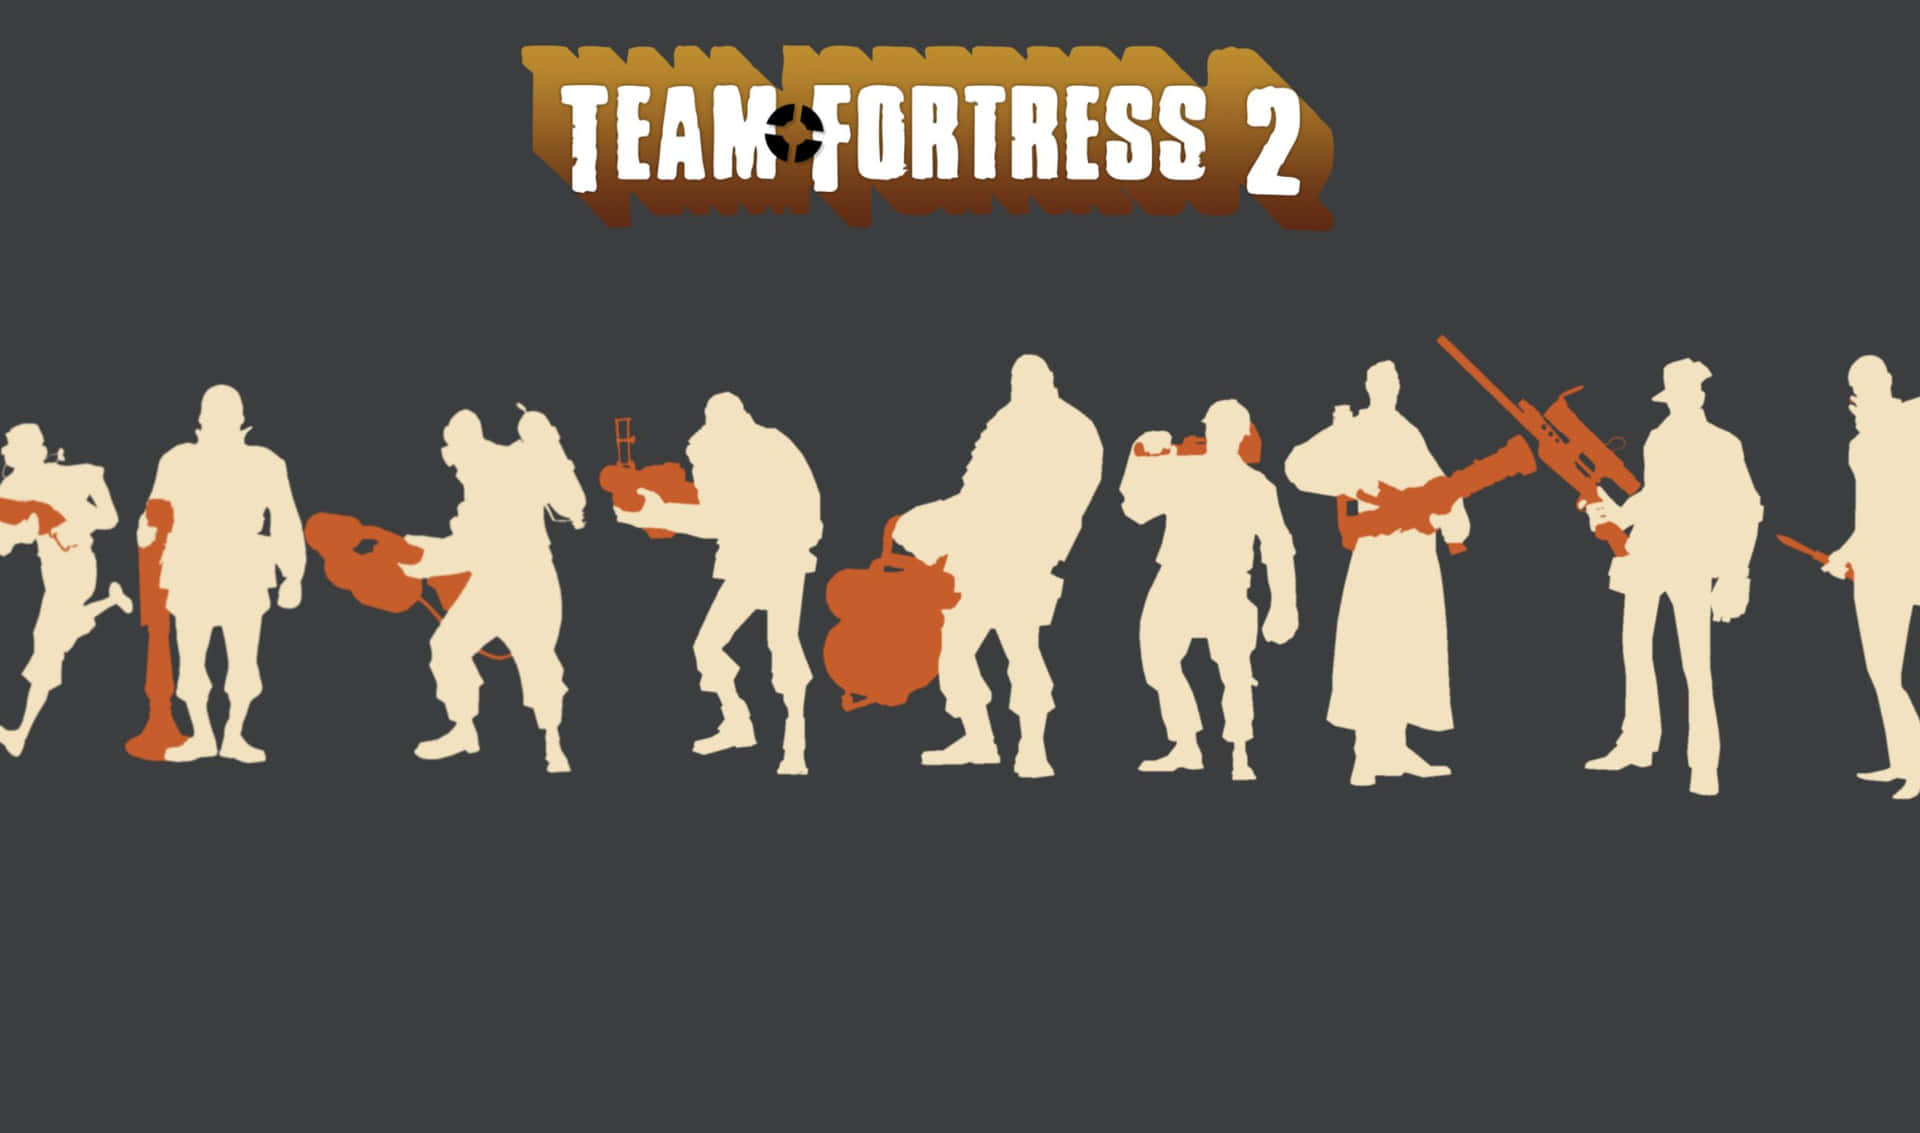 Ungrupo De Personas Con Armas Y Una Pancarta Que Dice Team Fortress 2.